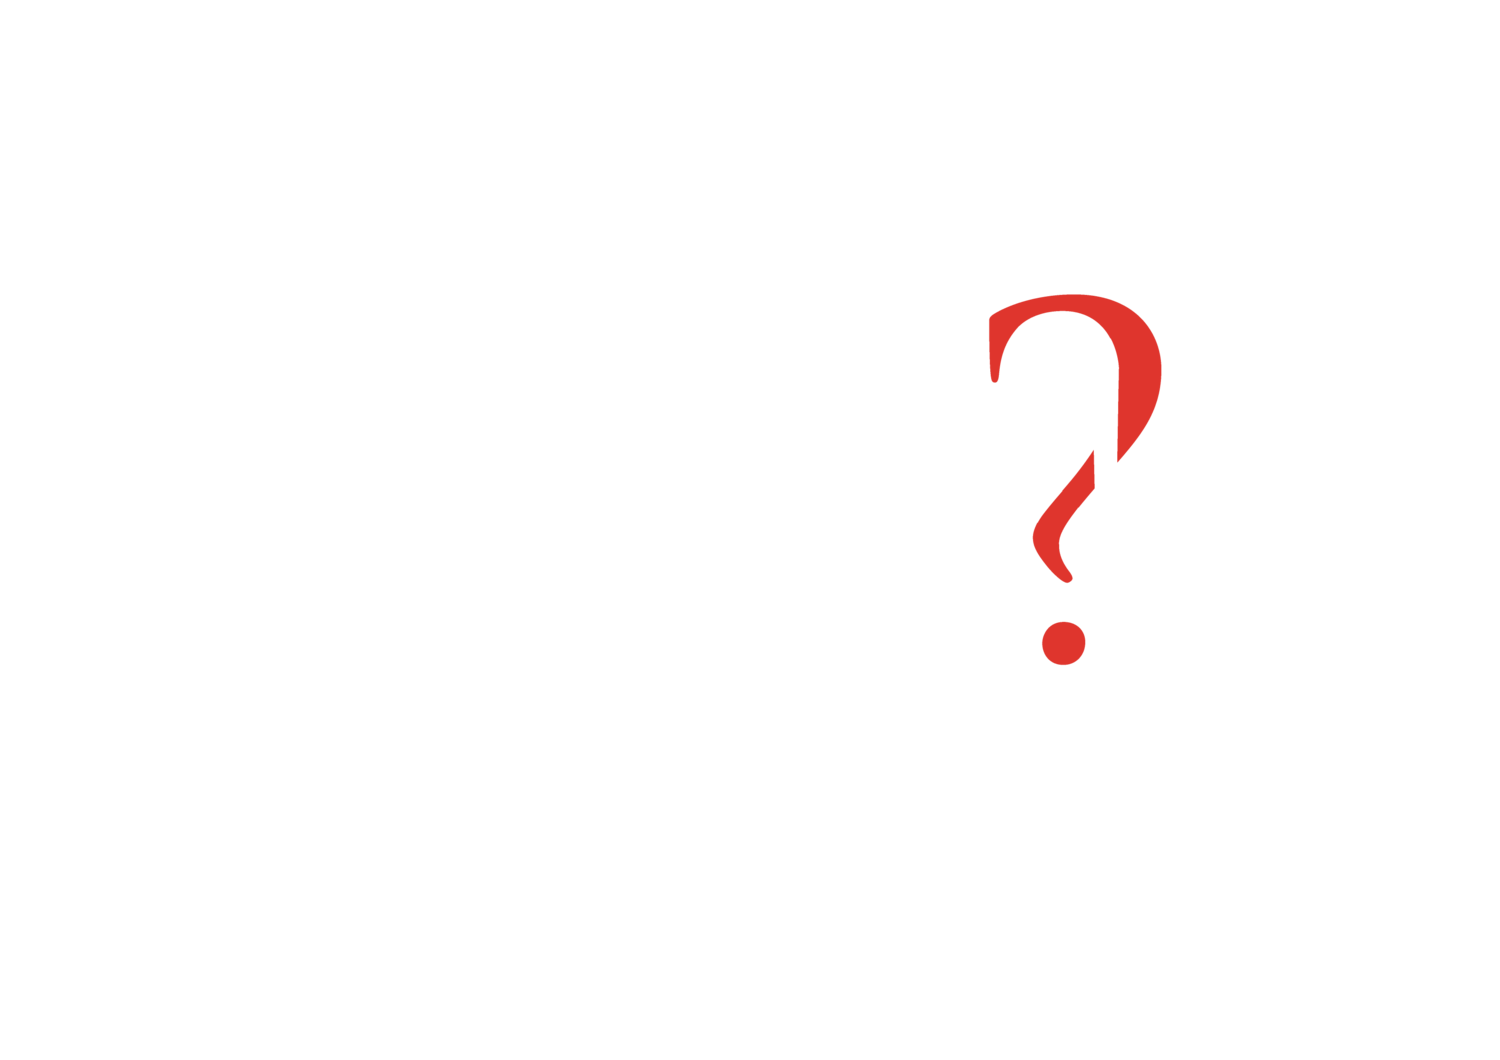 W.I.N.